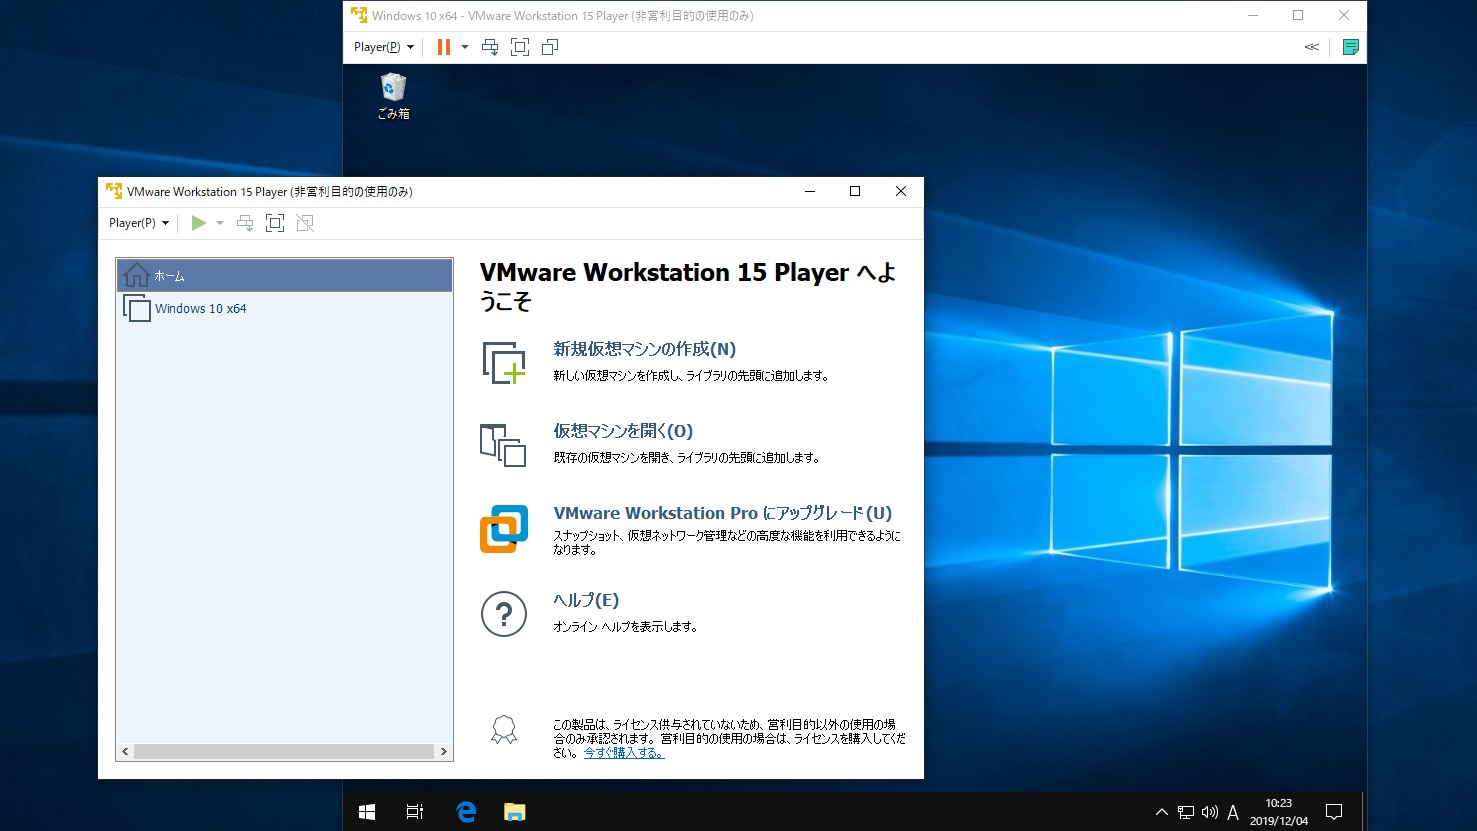 7909円 発売モデル VMware Workstation 16 Pro 永続 1PC 日本語版 ダウンロード版 永久ライセンス